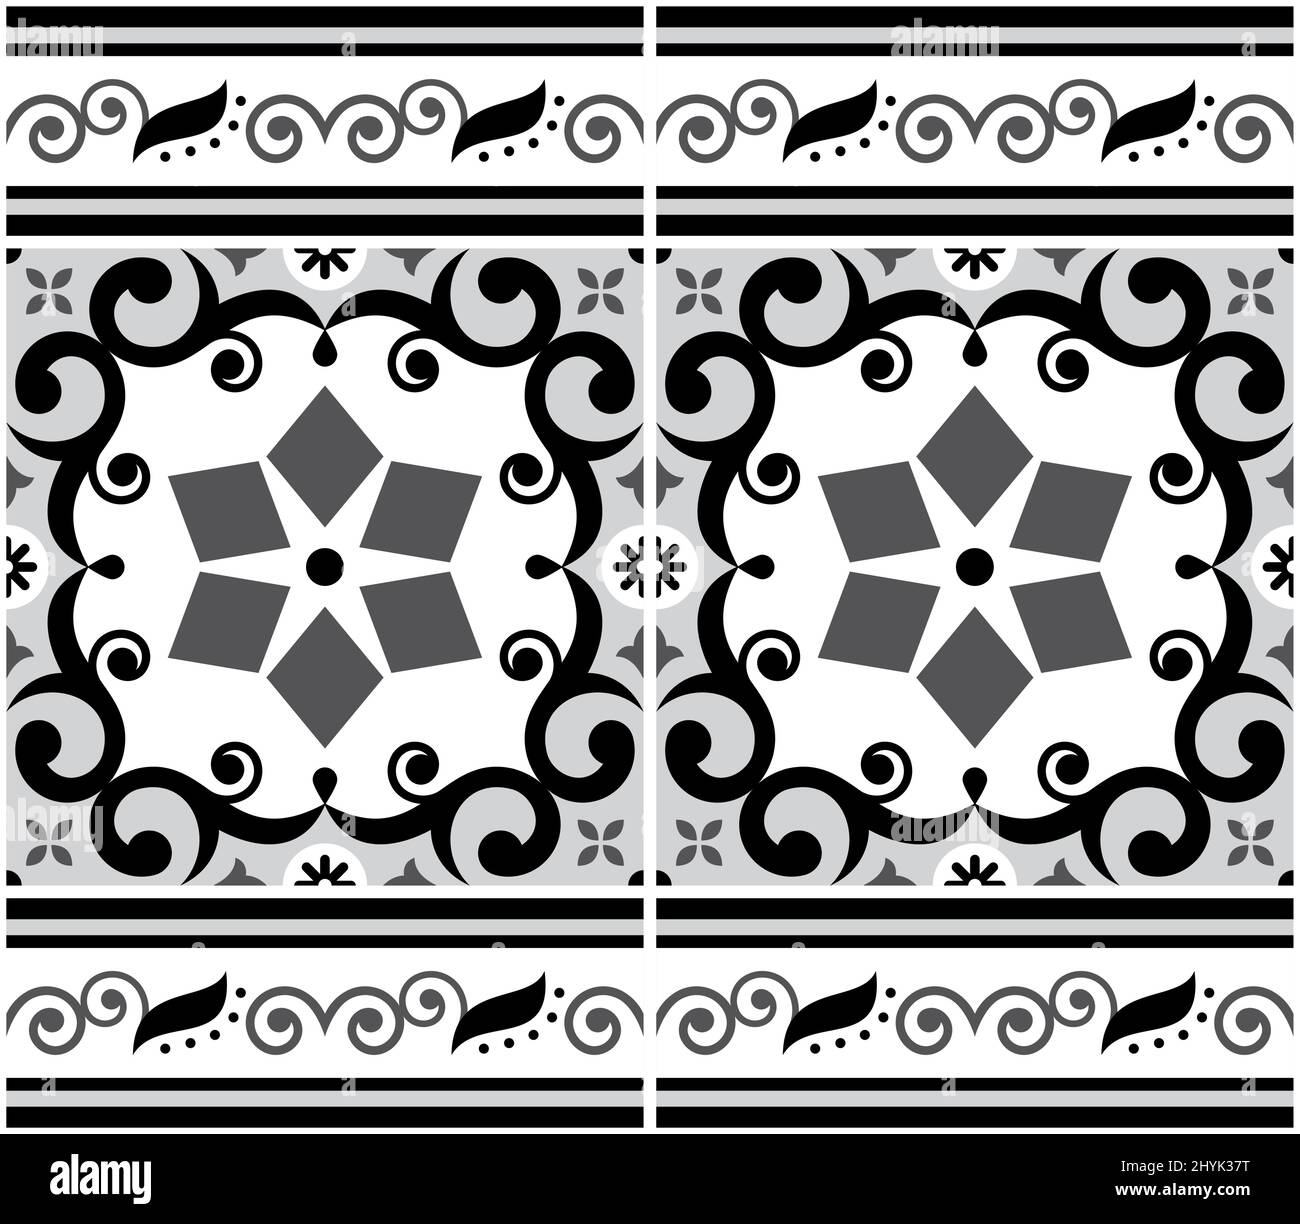 Portugiesische Azulejo Fliesen nahtlose Vektor-Muster, graues Retro-Design mit Rahmen oder Grenze, Blumen, Wirbel und geometrische Formen Stock Vektor